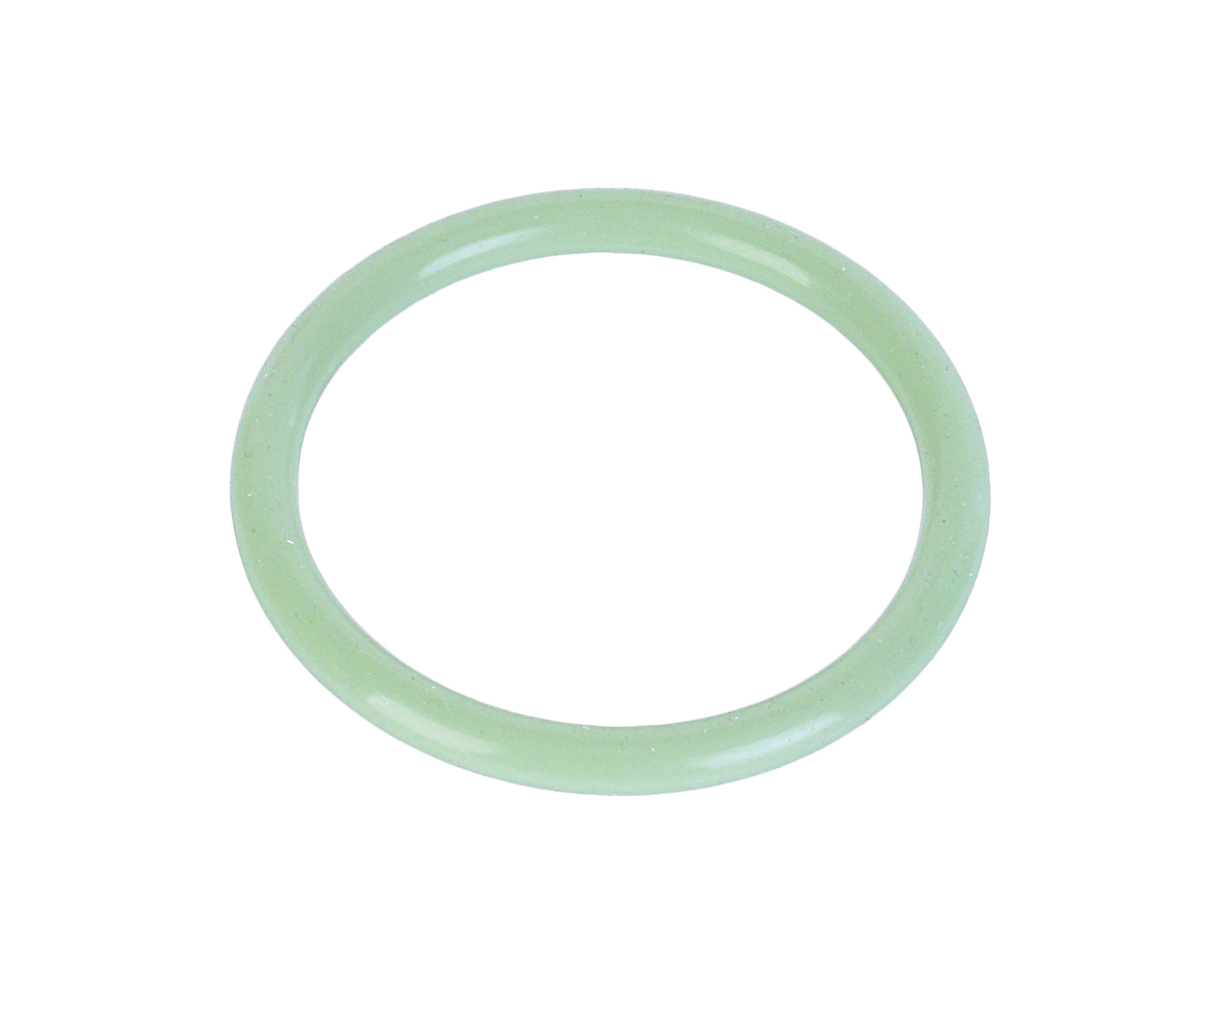 Кольцо ЯМЗ-650.10 уплотнительное патрубка маслозаборного зеленое силикон РД 650.1011560